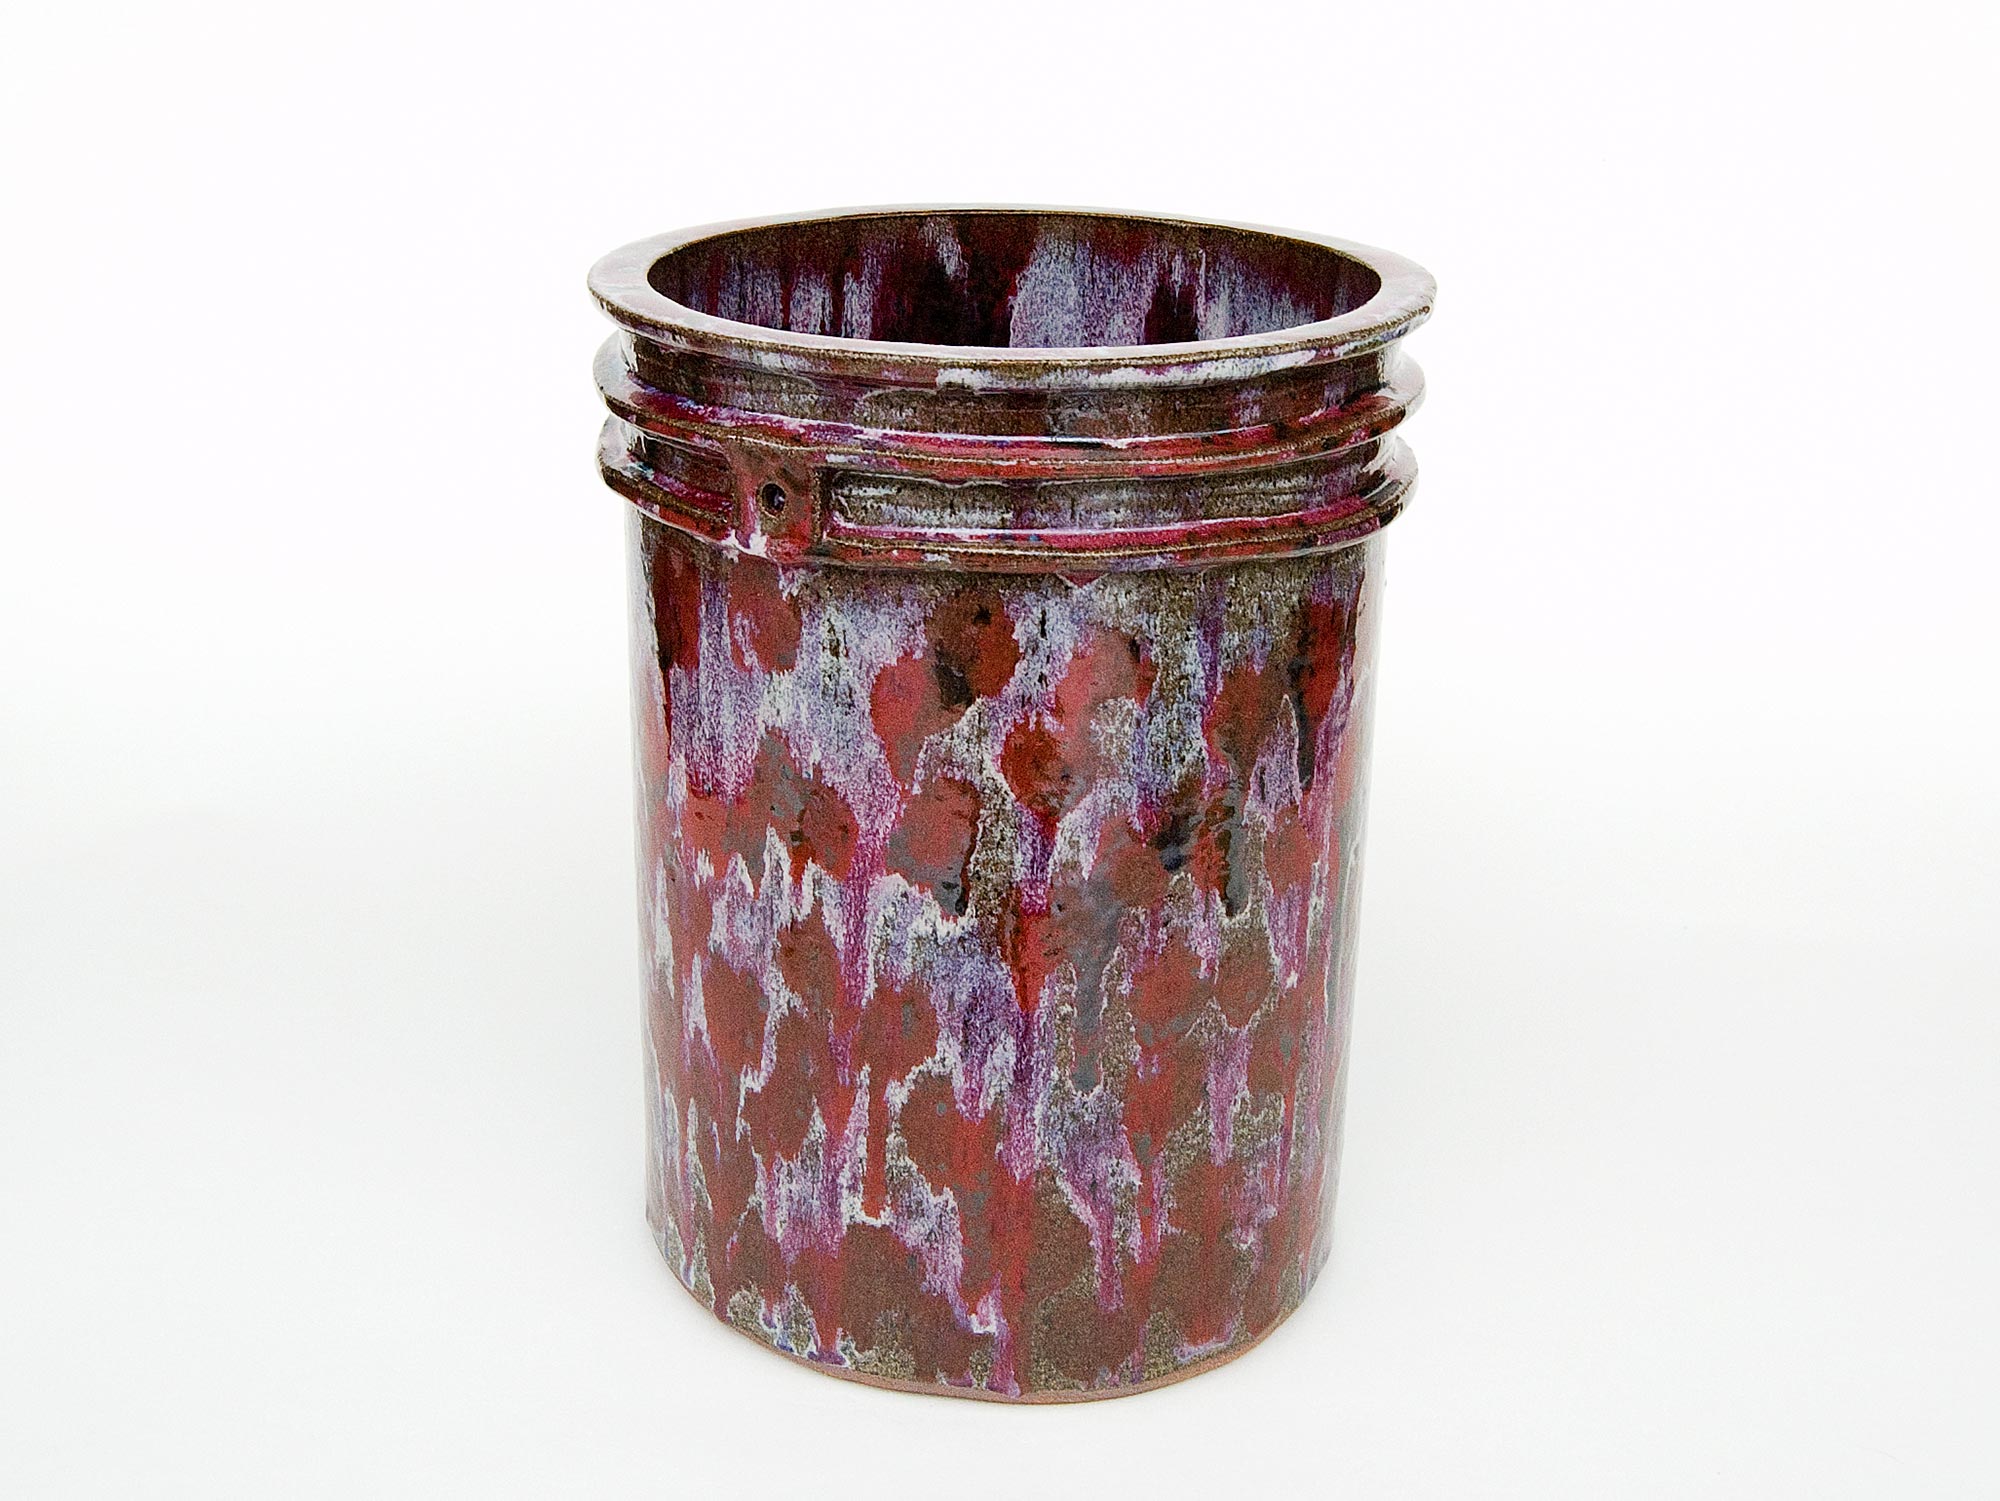 2 Gallon Bucket with Jomon Decoration - teal — Matt Merkel Hess